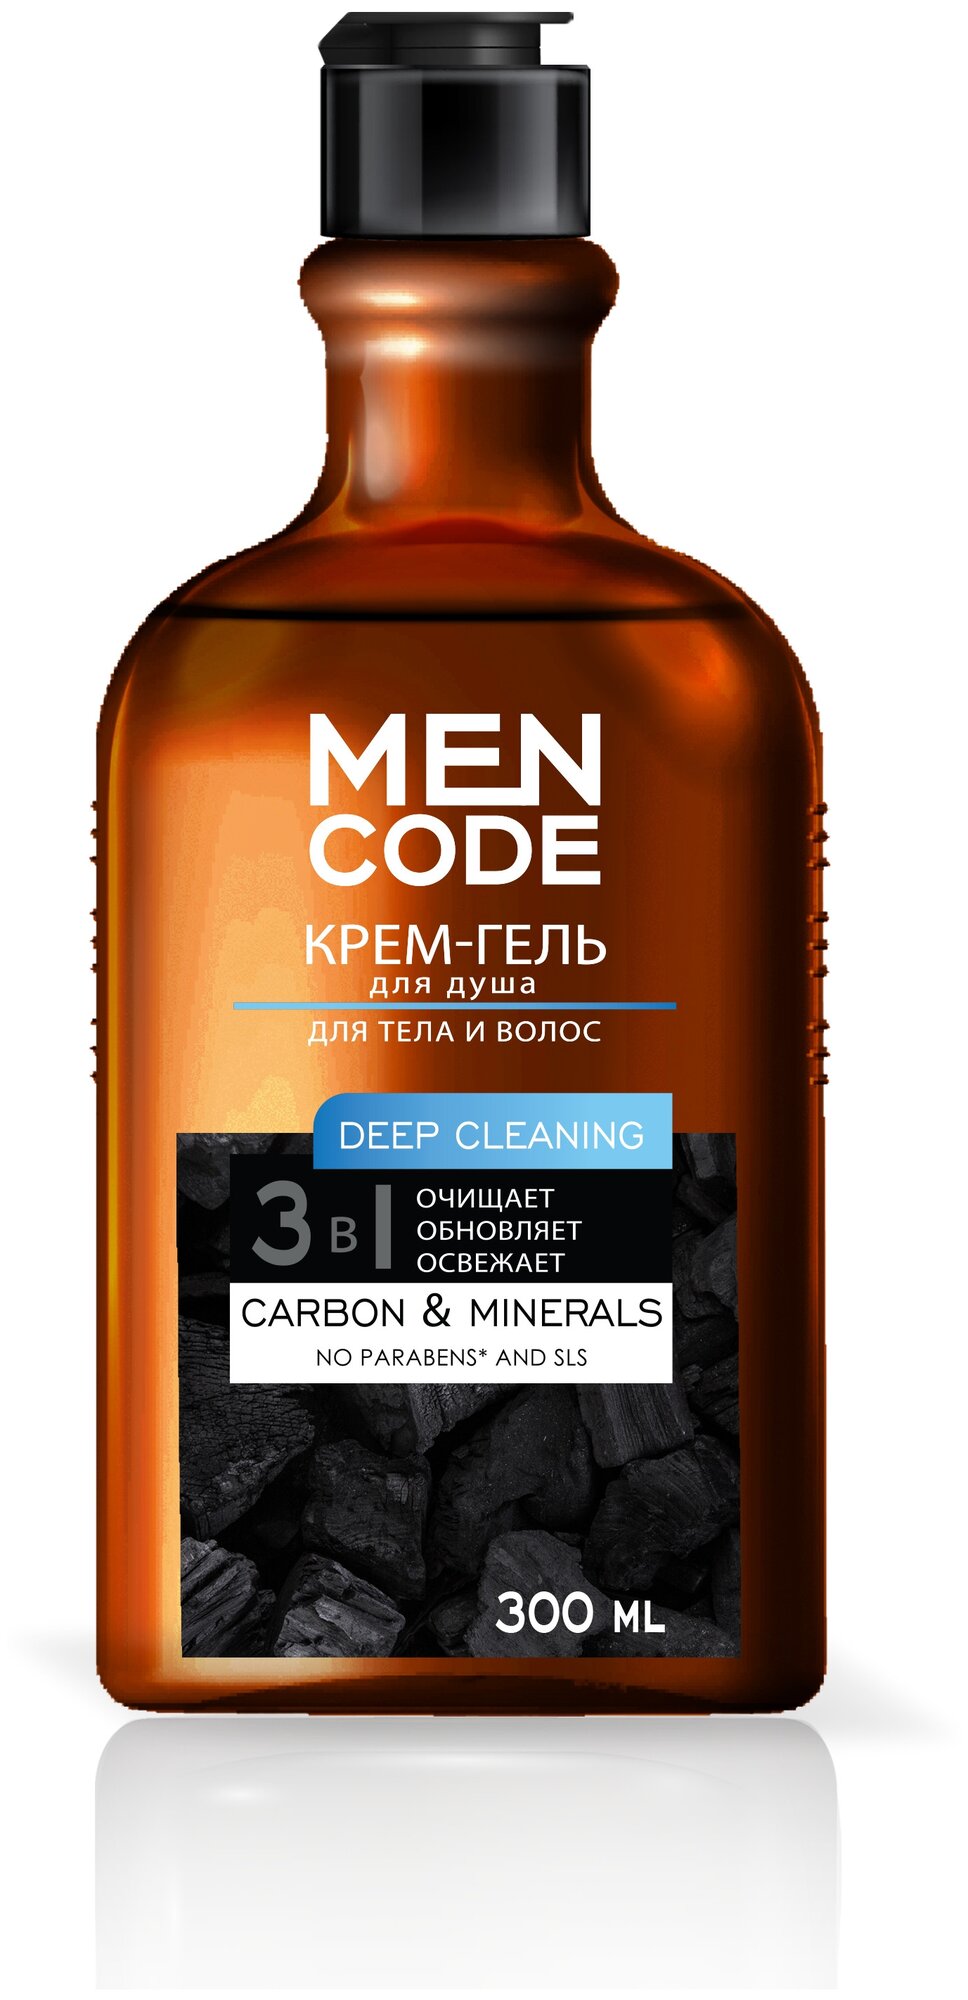 Крем-гель для душа MEN CODE Deep Cleaning с экстрактами угля и минералов, 300 мл